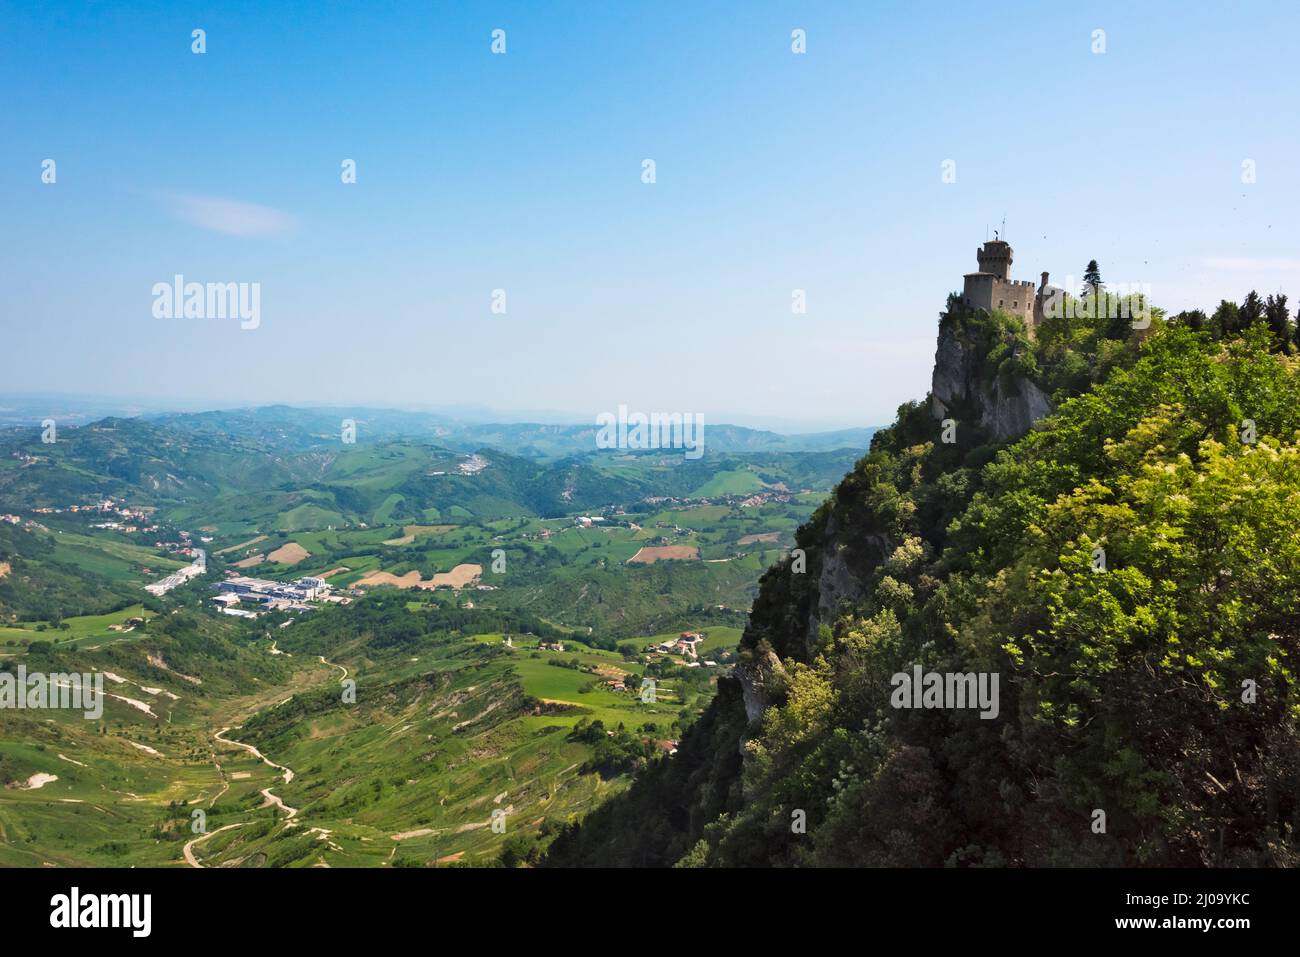 Festung von Guaita auf dem Berg Titano, der erste Turm der drei Türme von San Marino, Republik San Marino Stockfoto